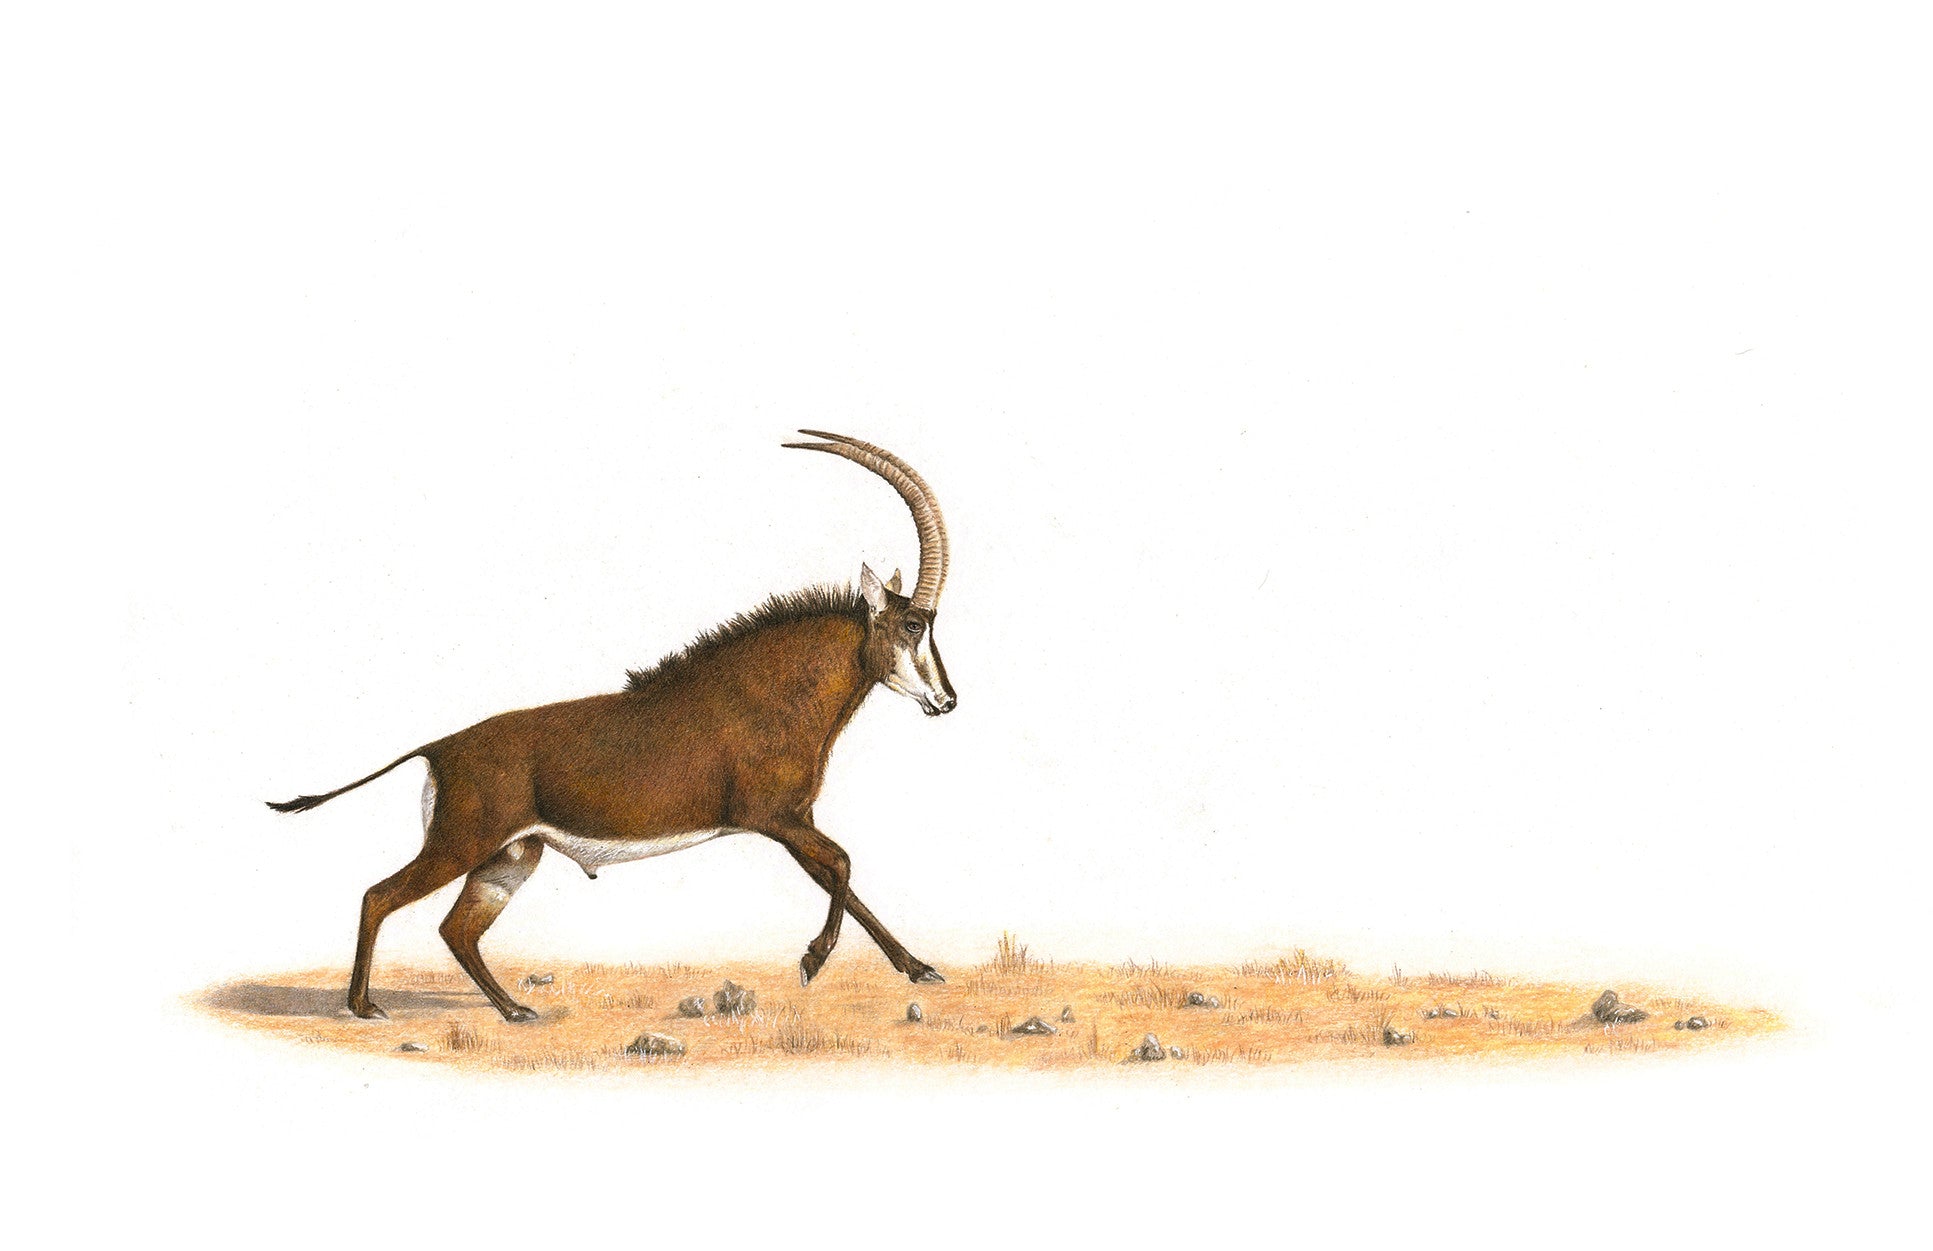 Sable antelope running through the bush at Ulusaba